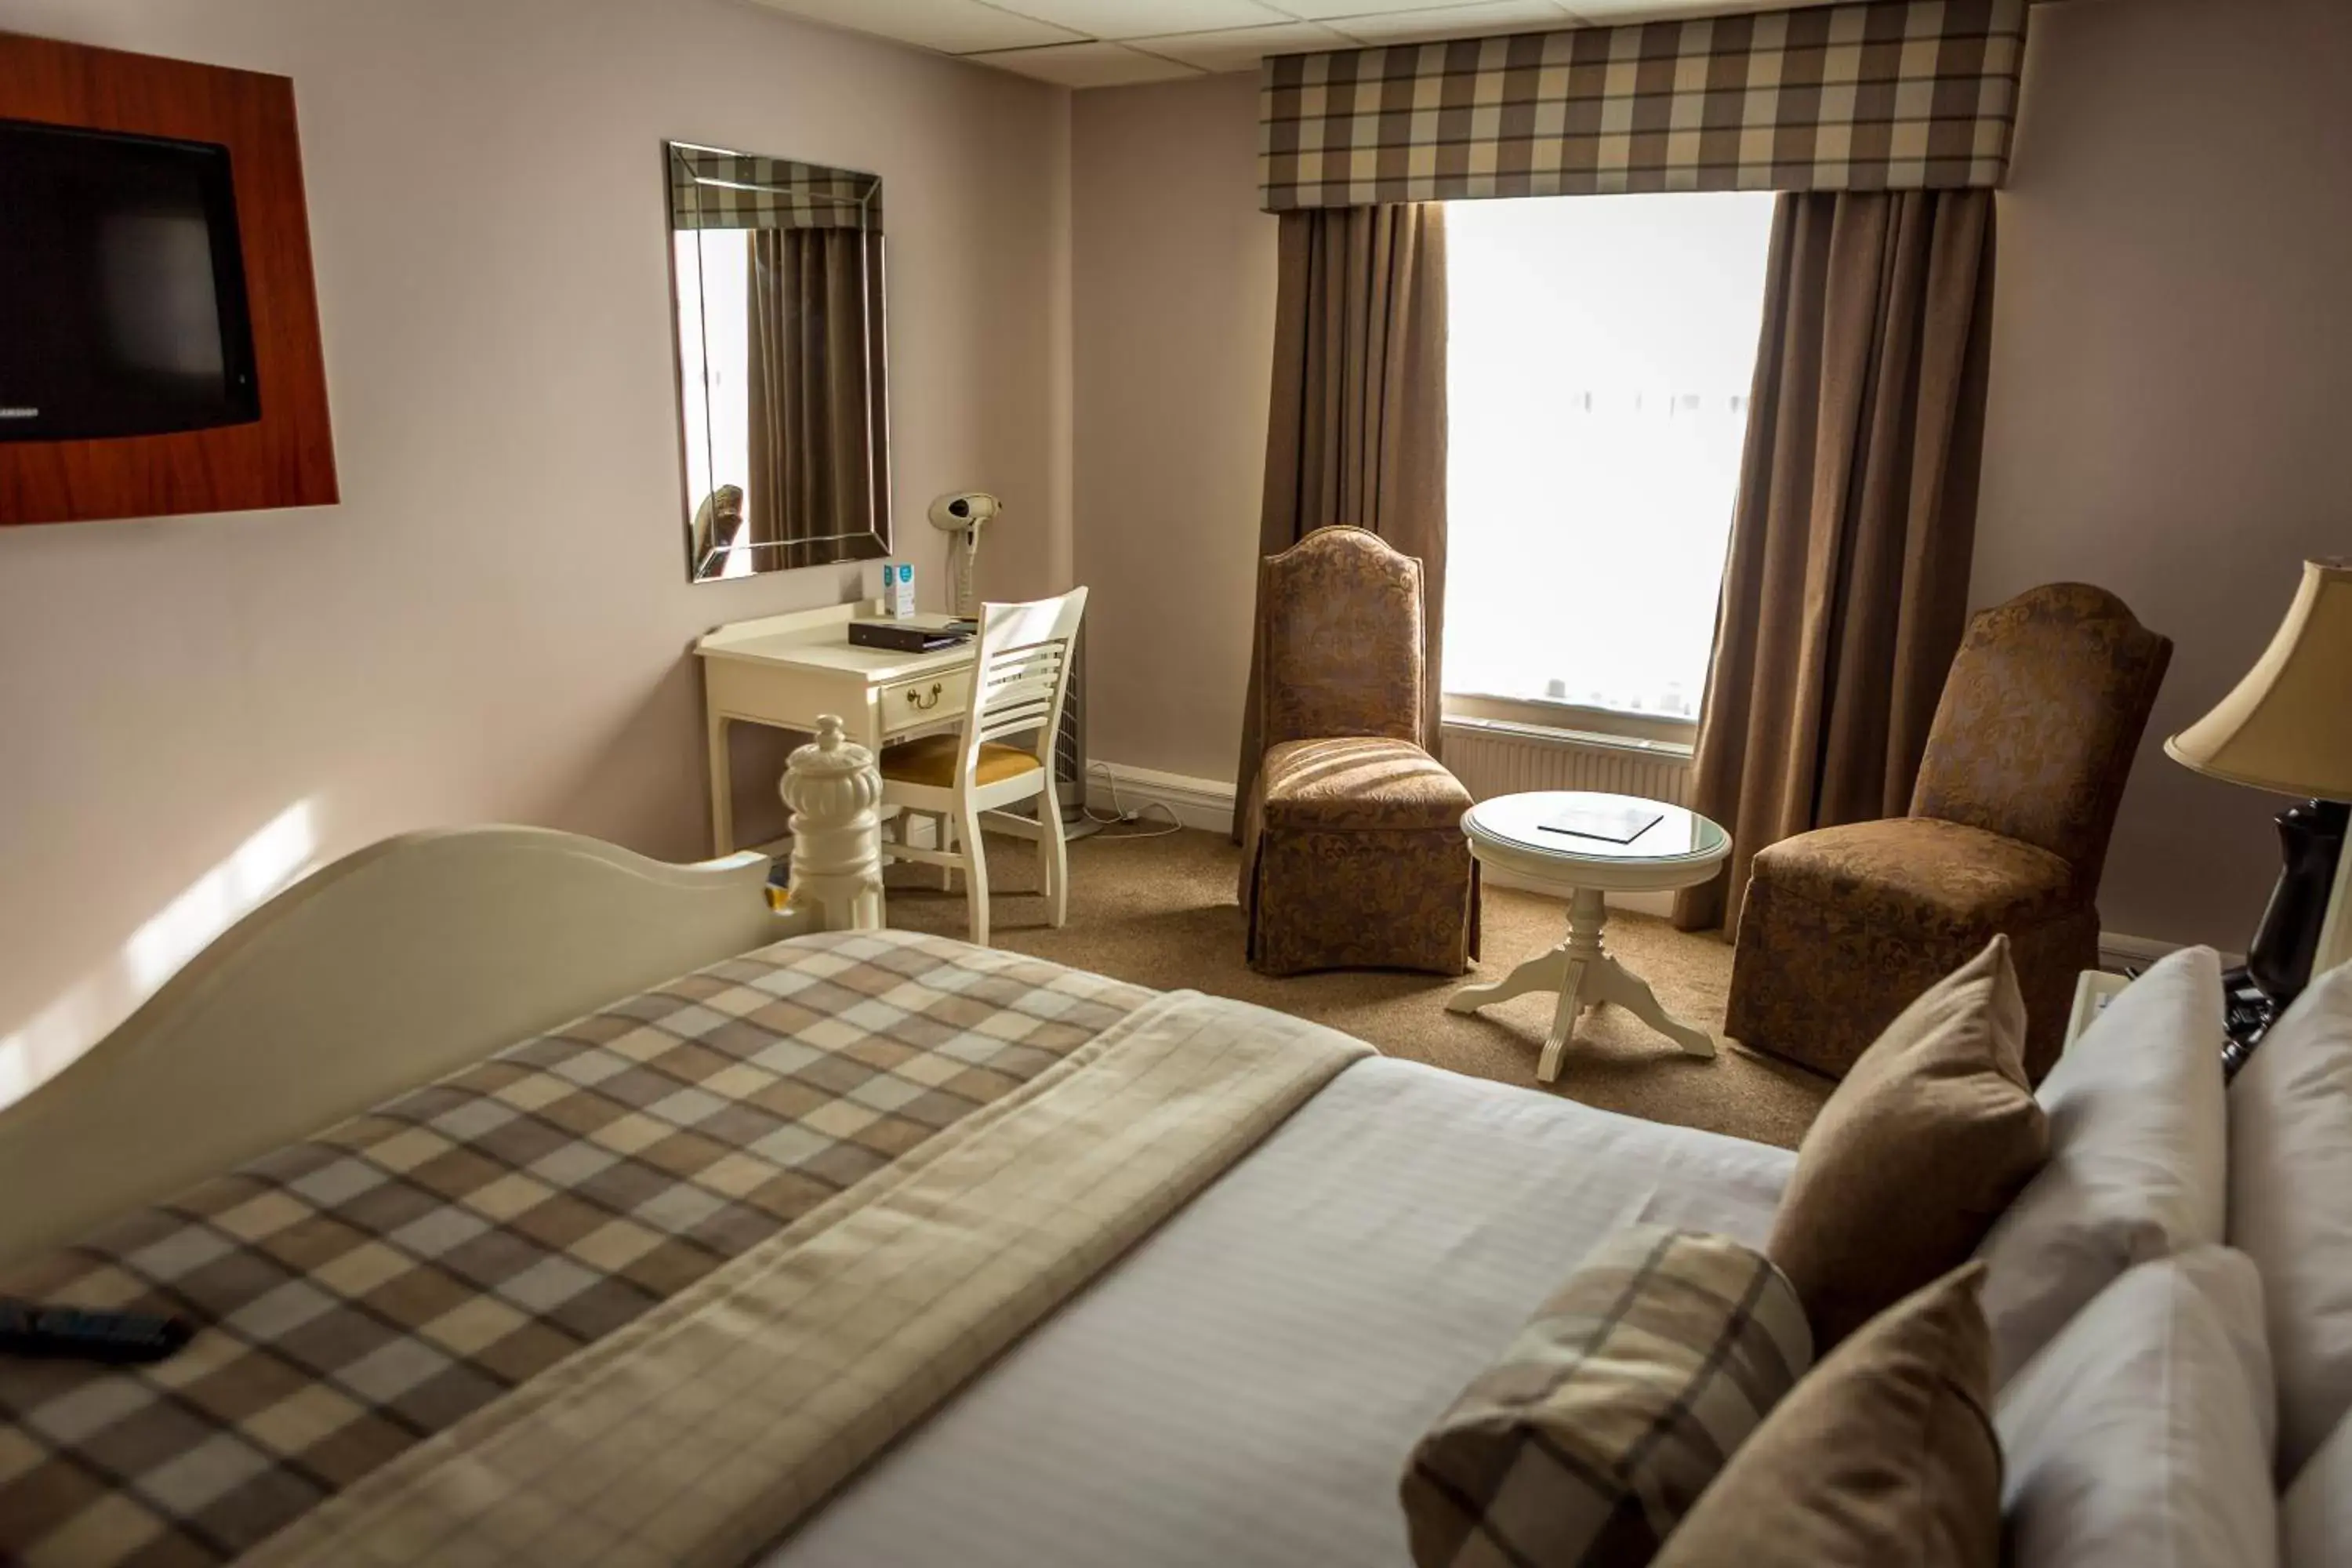 Bedroom, Seating Area in Best Western Plus West Retford Hotel